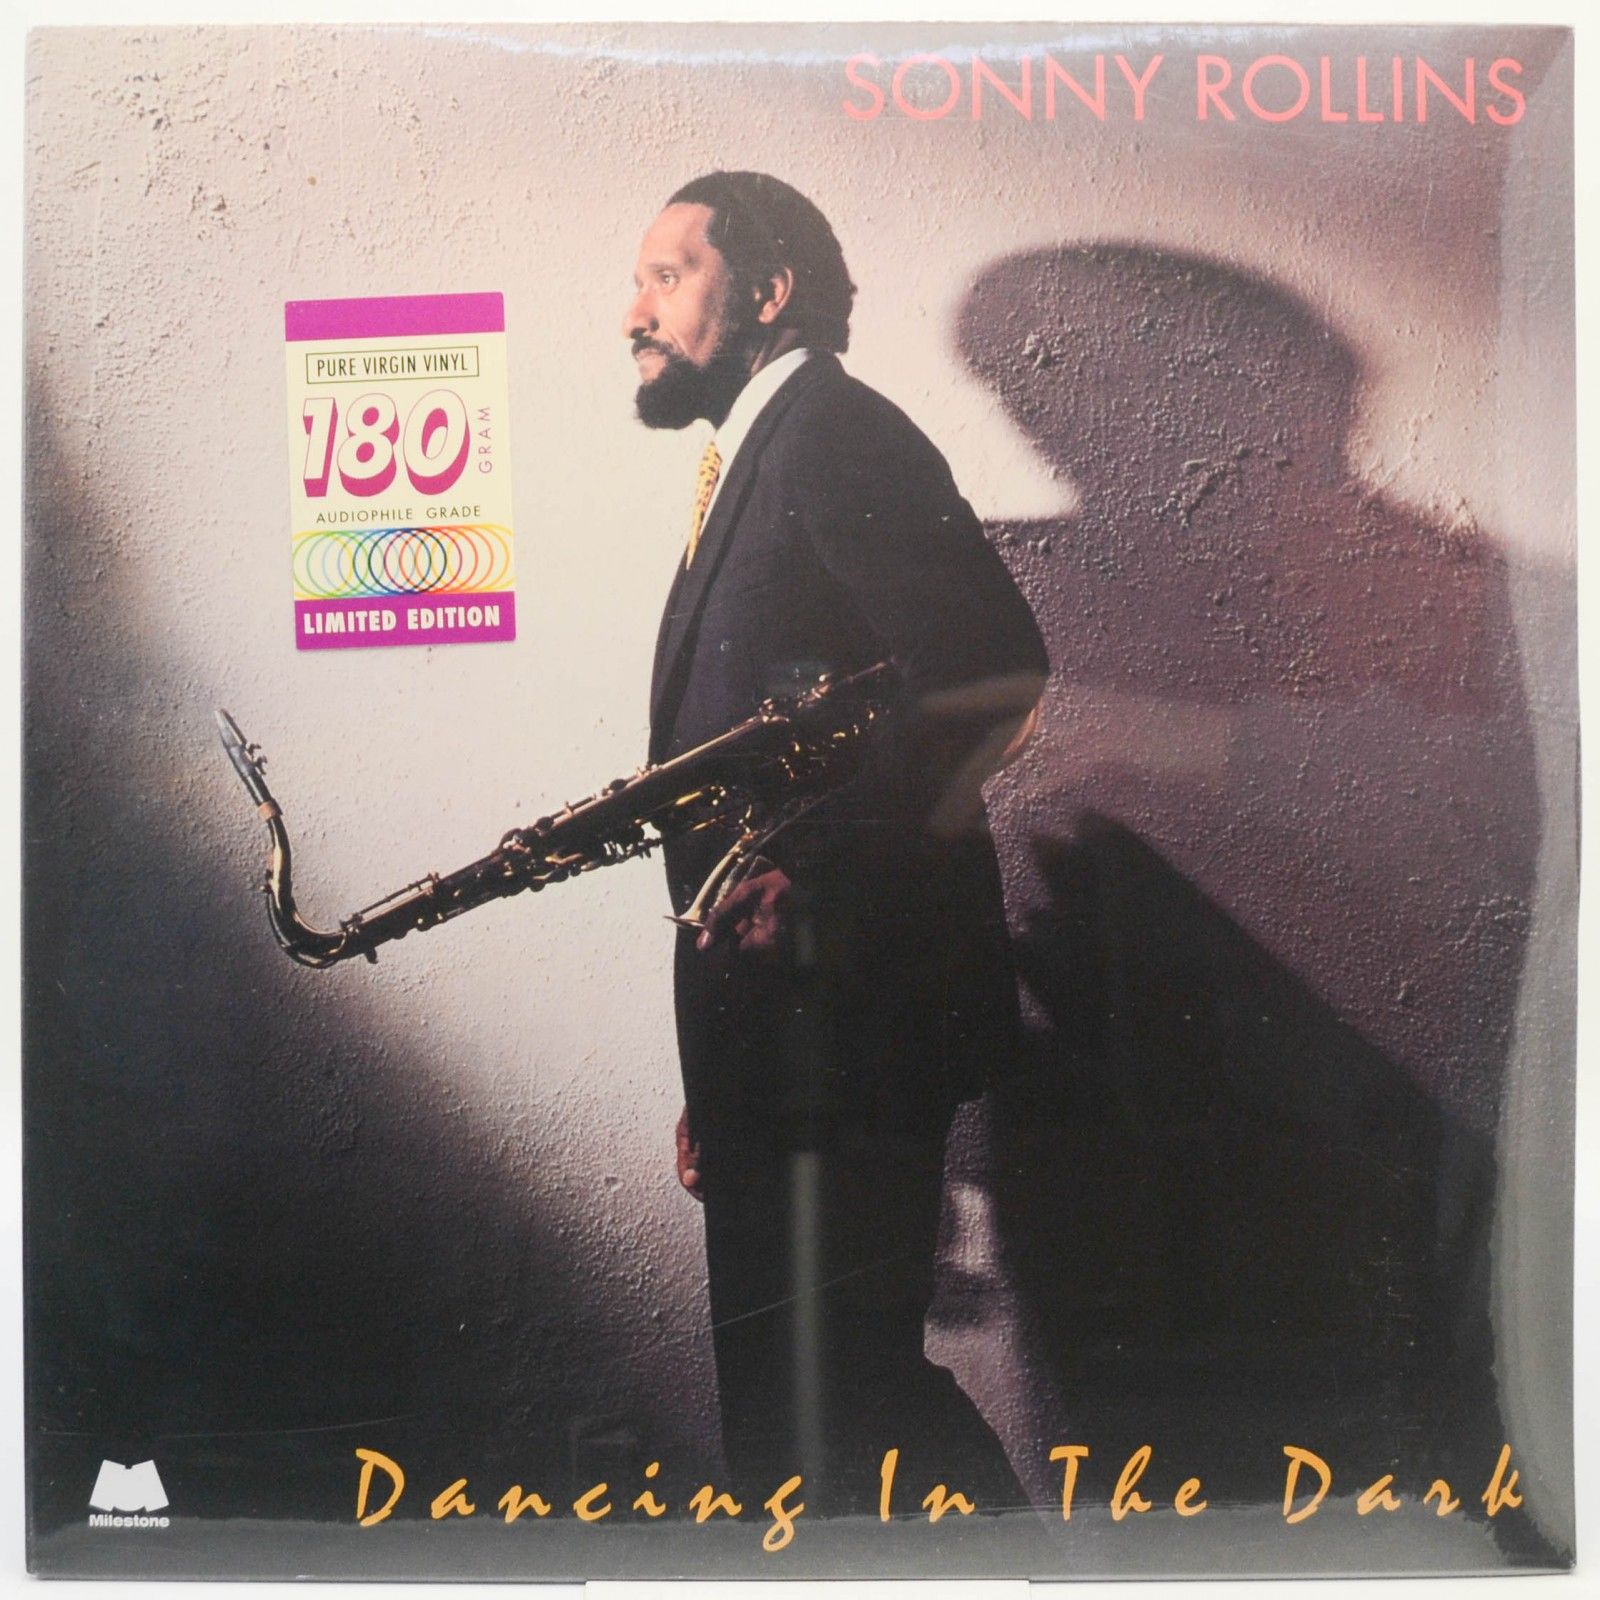 Sonny Rollins — Dancing In The Dark, 1987